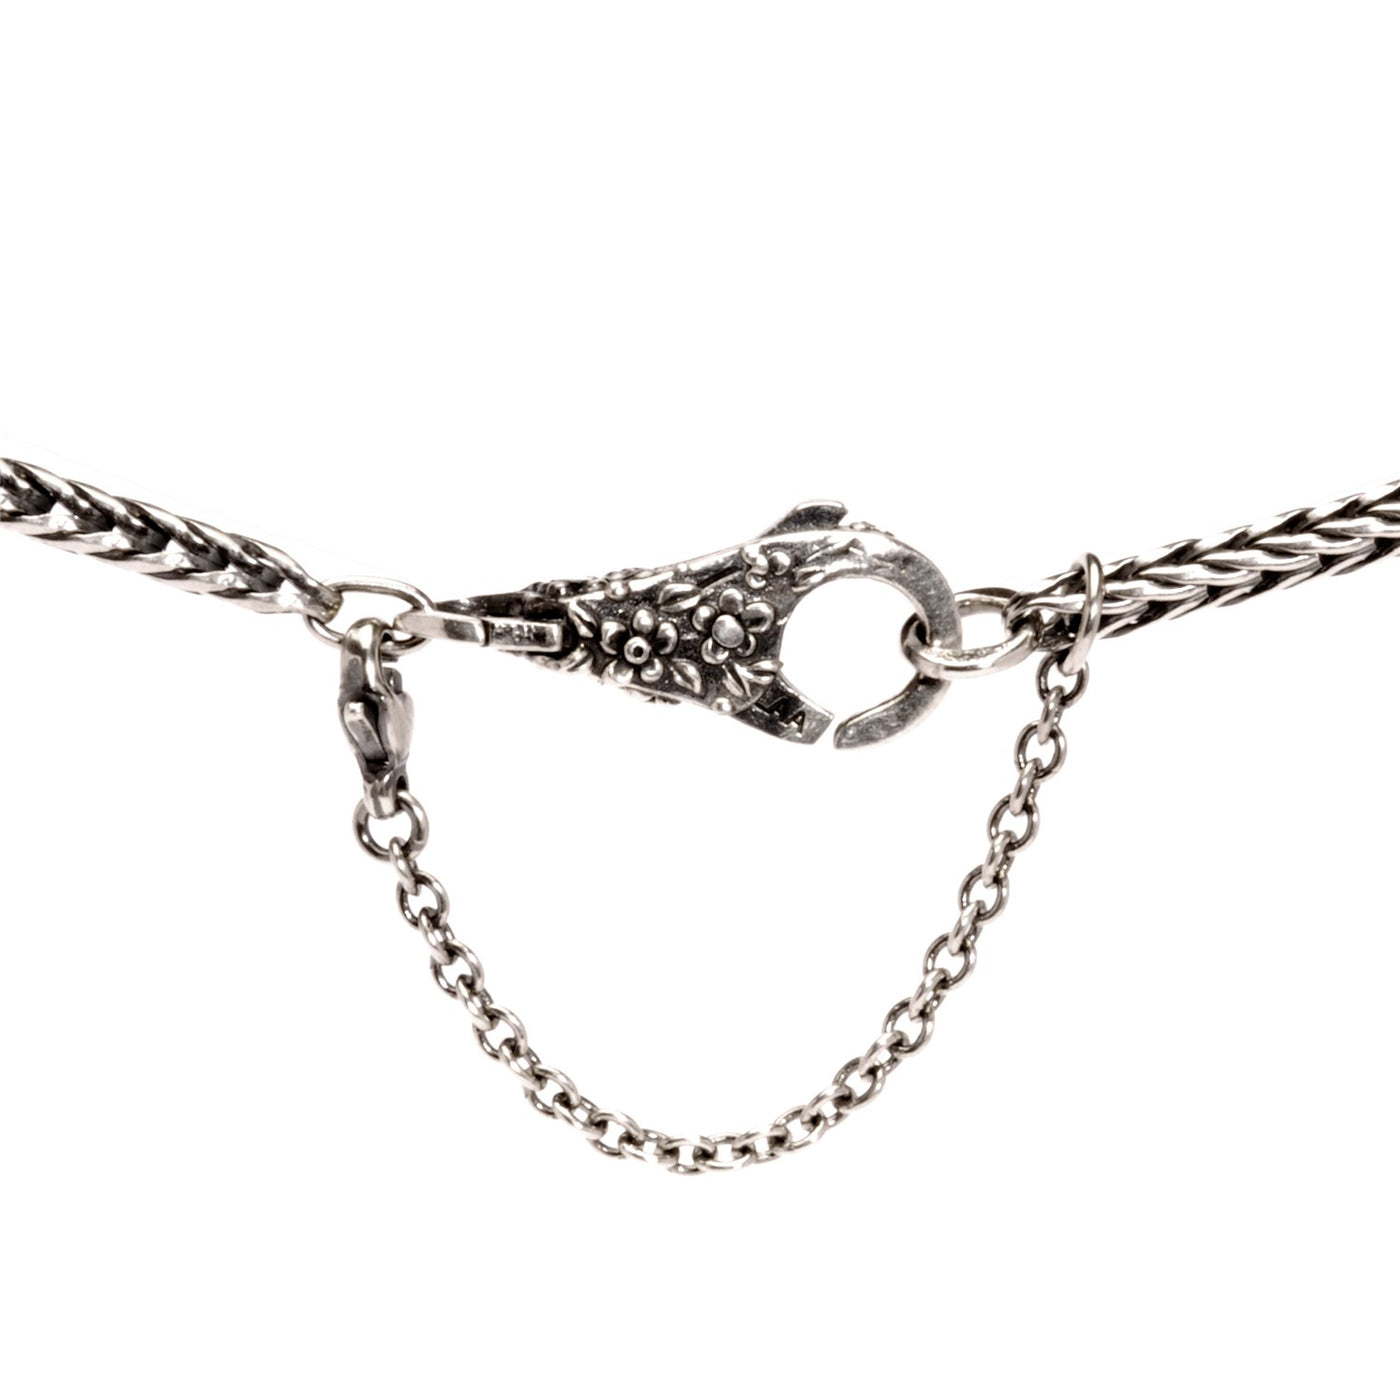 Sølv Sikkerhedskæde med to løkker på hver side, bruges til at tilføje ekstra sikkerhed til et armbånd eller en halskæde og forhindre tab.